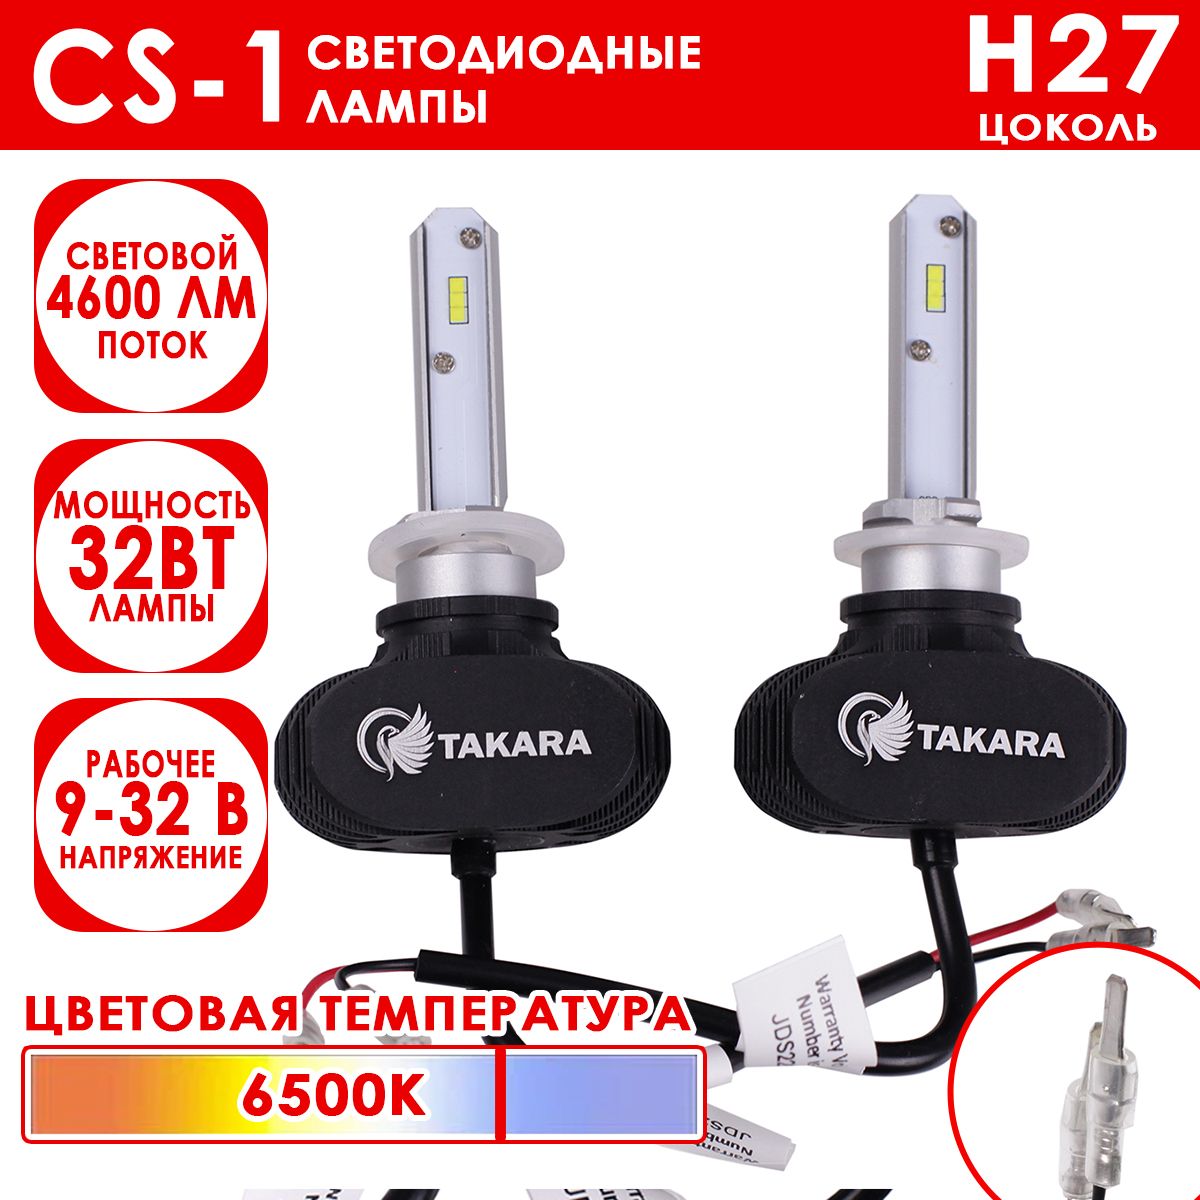 Светодиодные лампы Takara CS-1 цоколь H27-880, 6500K, 32W (2 Шт)